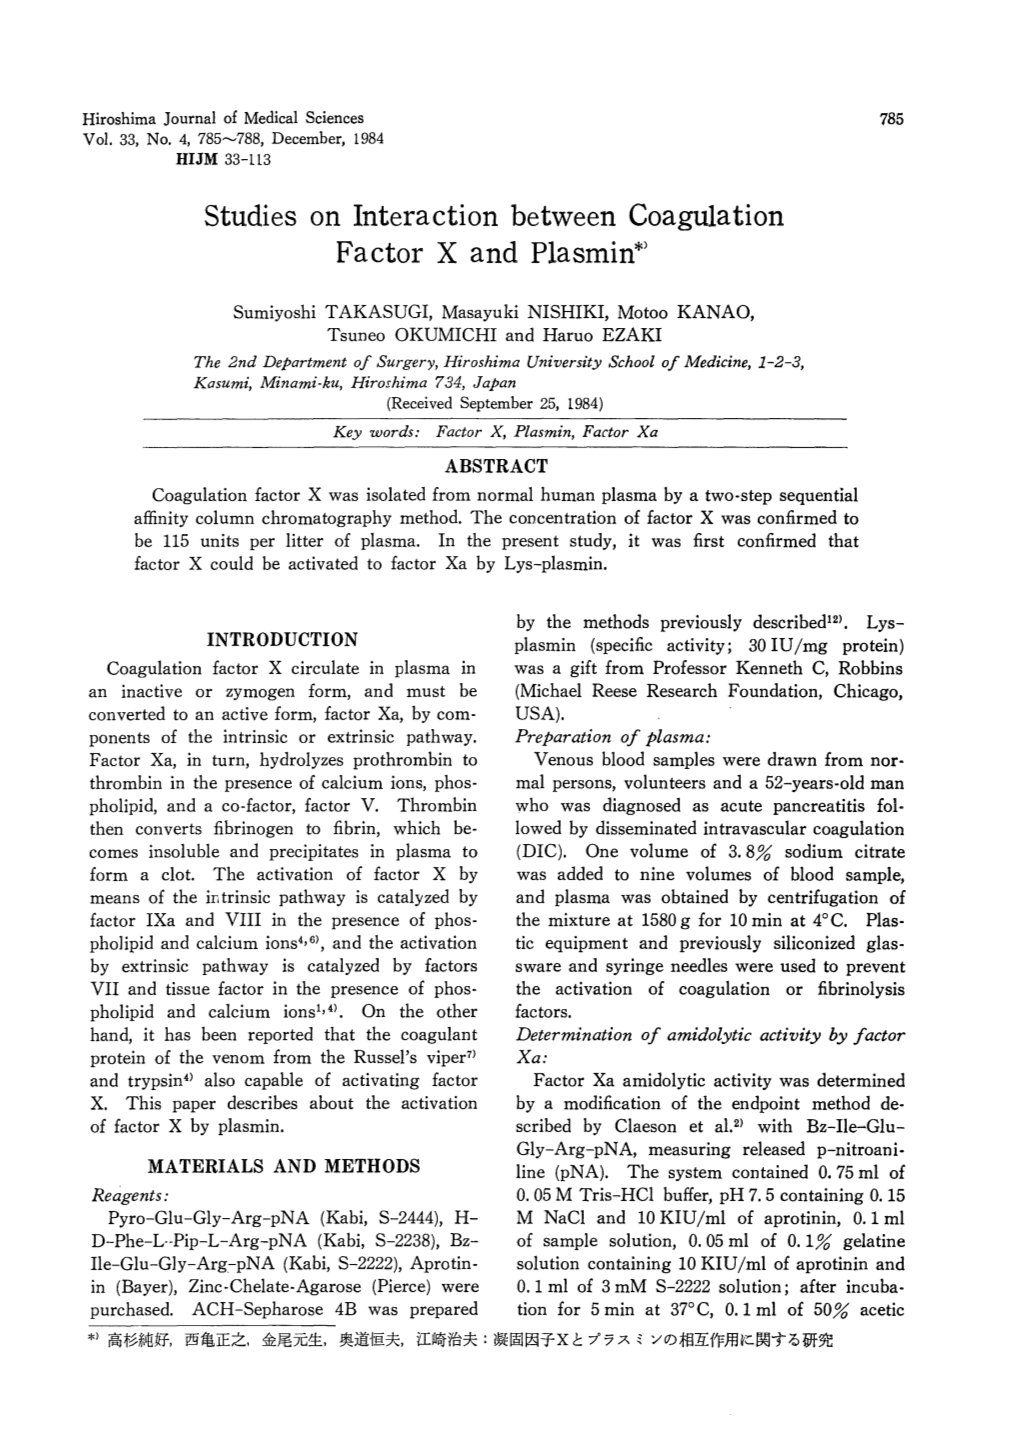 Studies on Interaction Between Coagulation Factor X and Plasmin*)